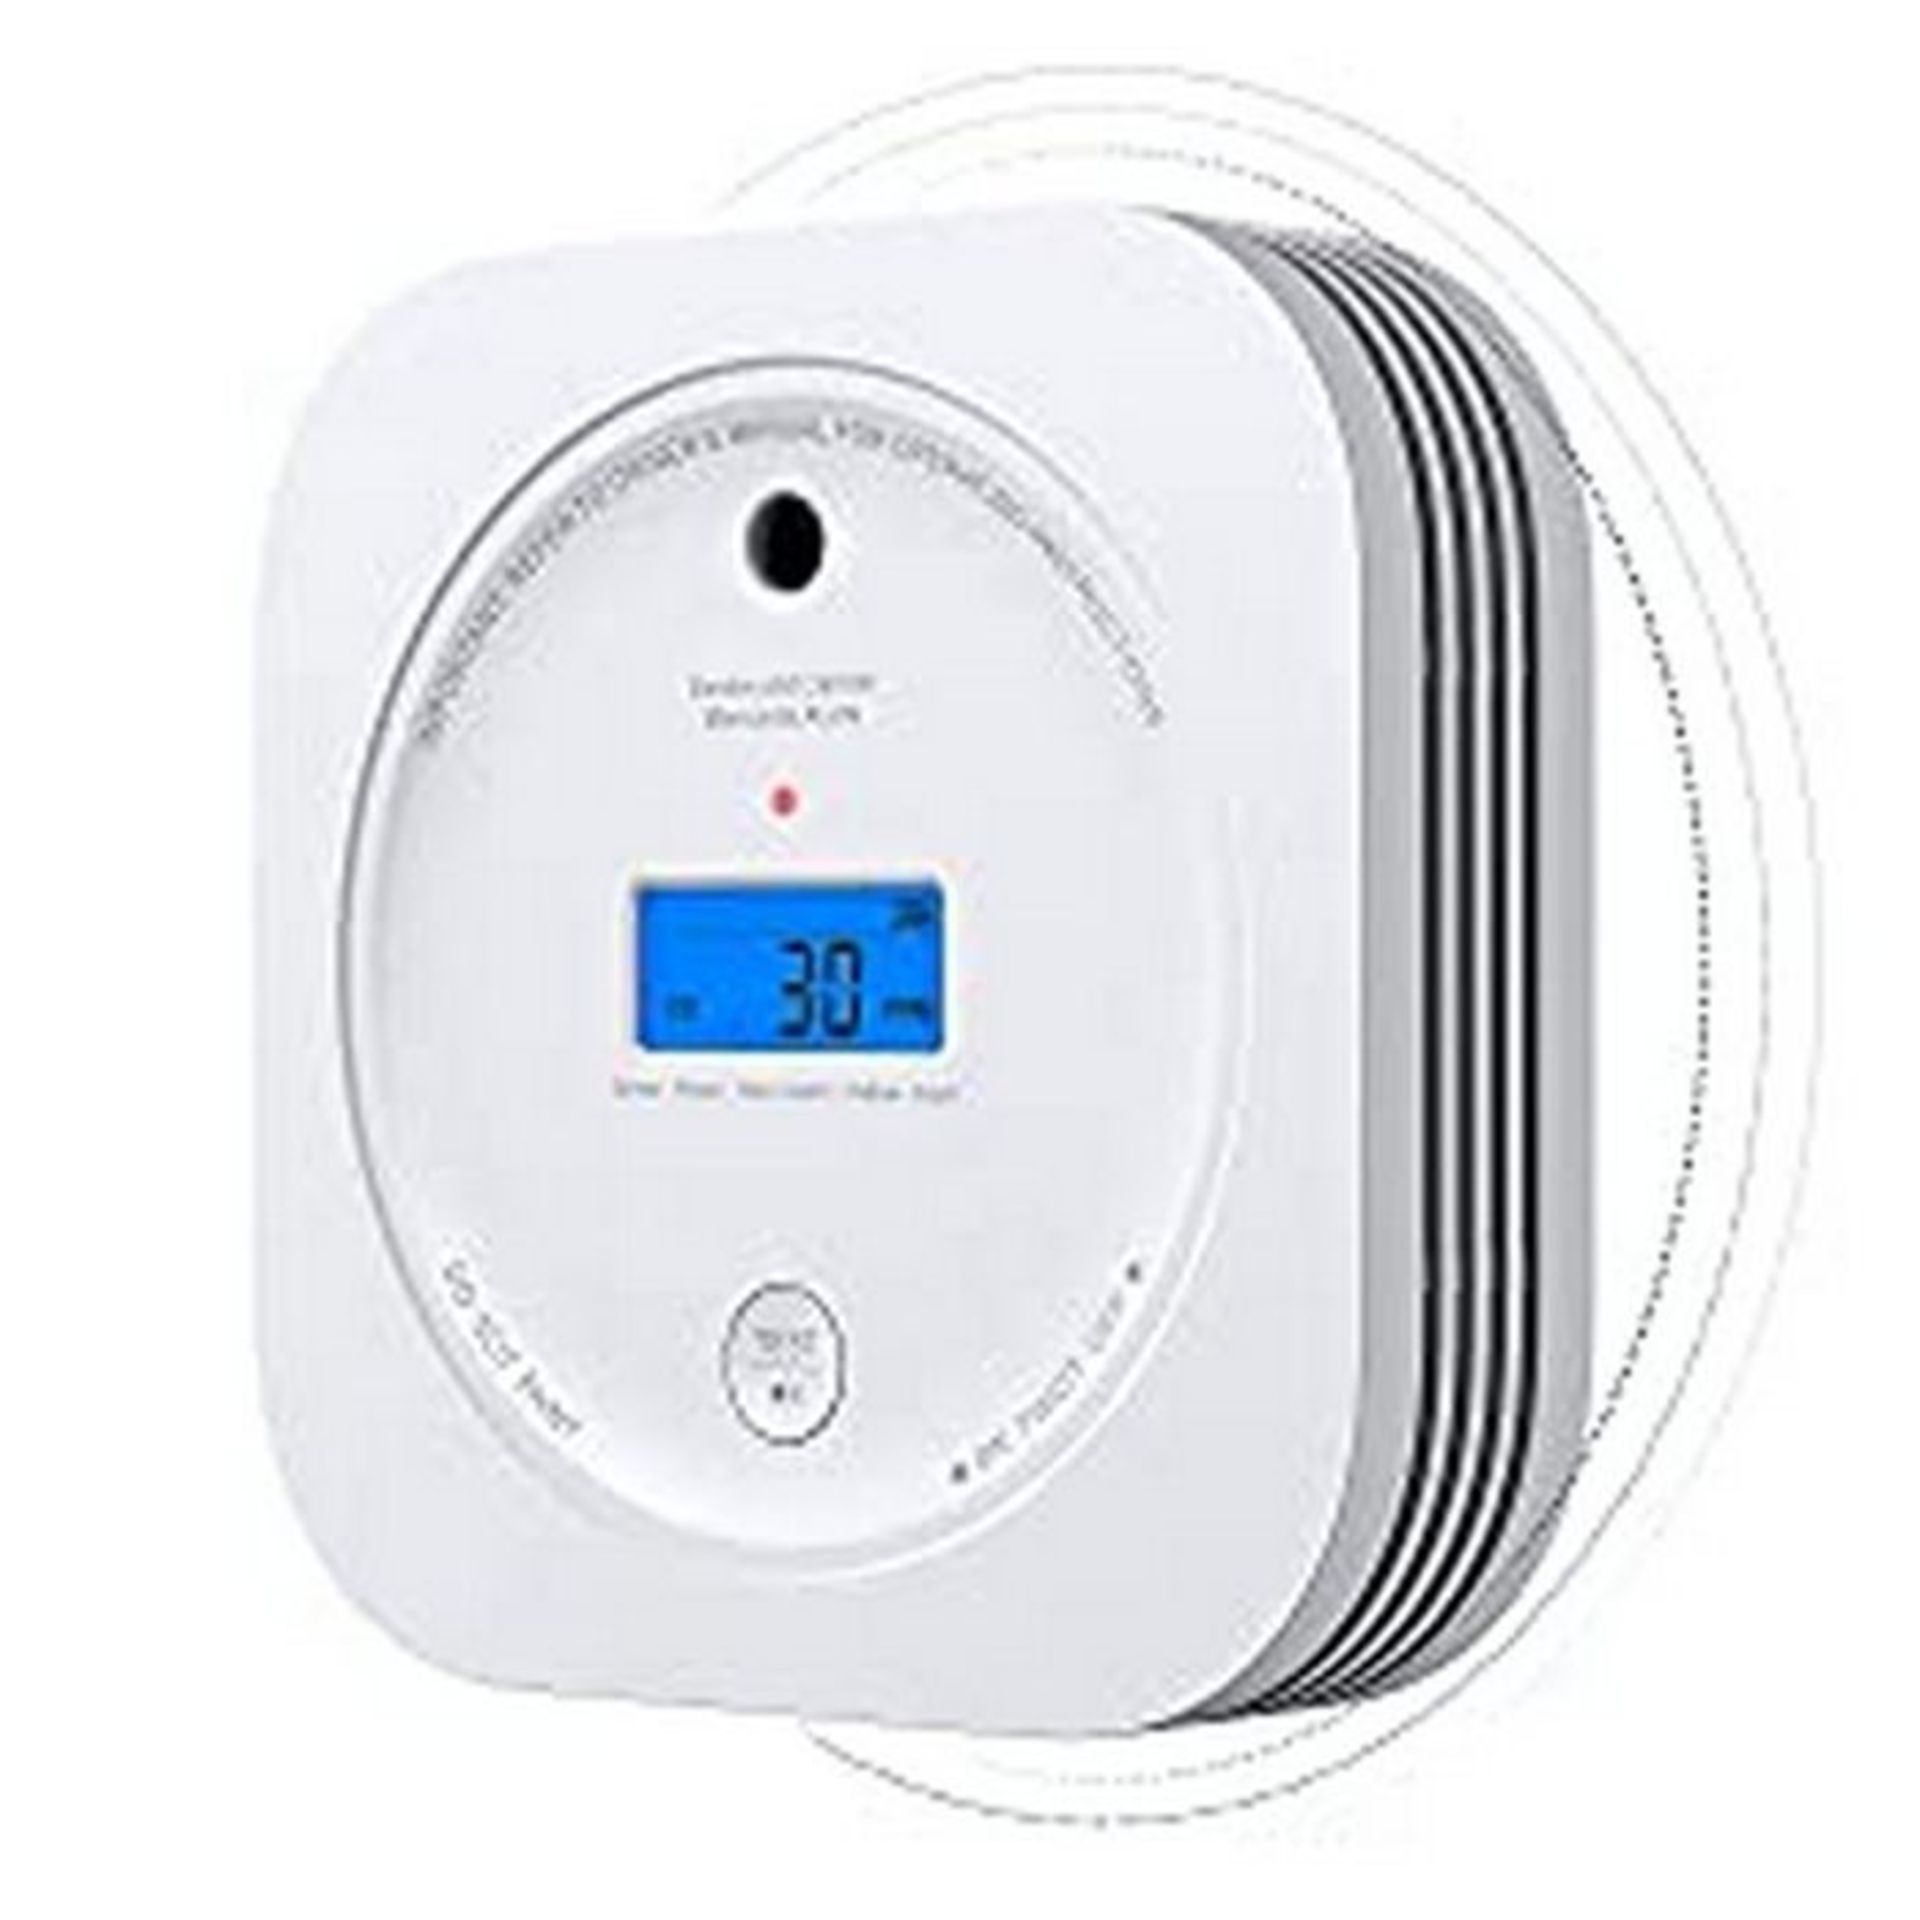 RRP £28.46 Smoke & Carbon Monoxide Alarm